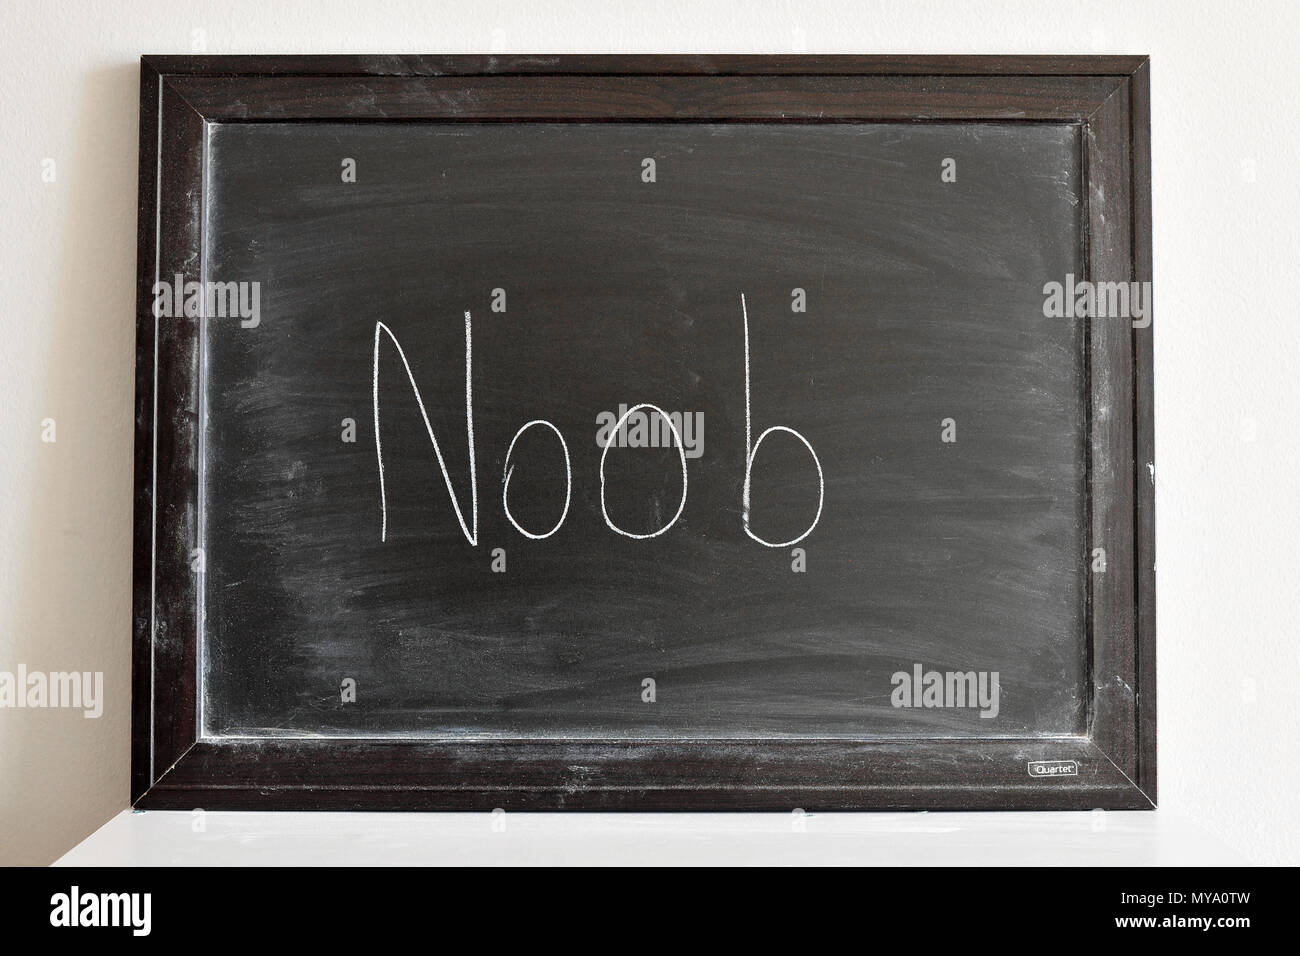 Noob written in white chalk on a blackboard Stock Photo